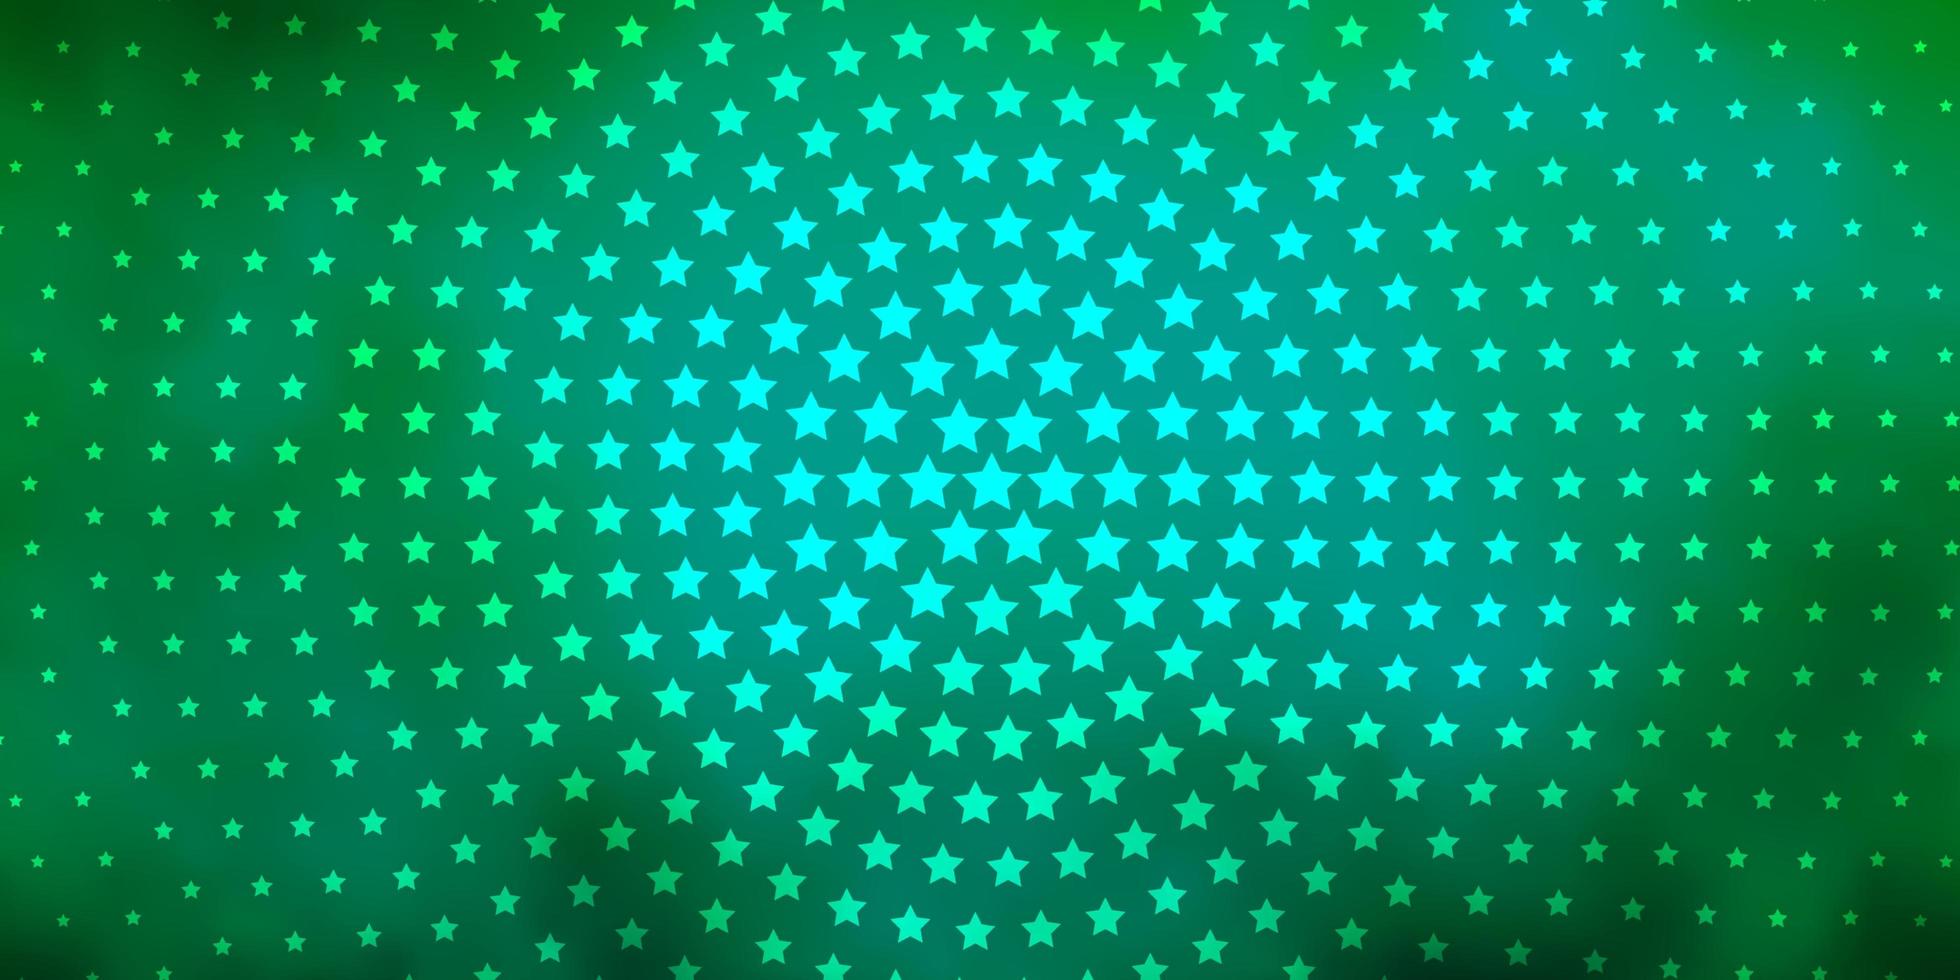 ljusgrön bakgrund med små och stora stjärnor. vektor